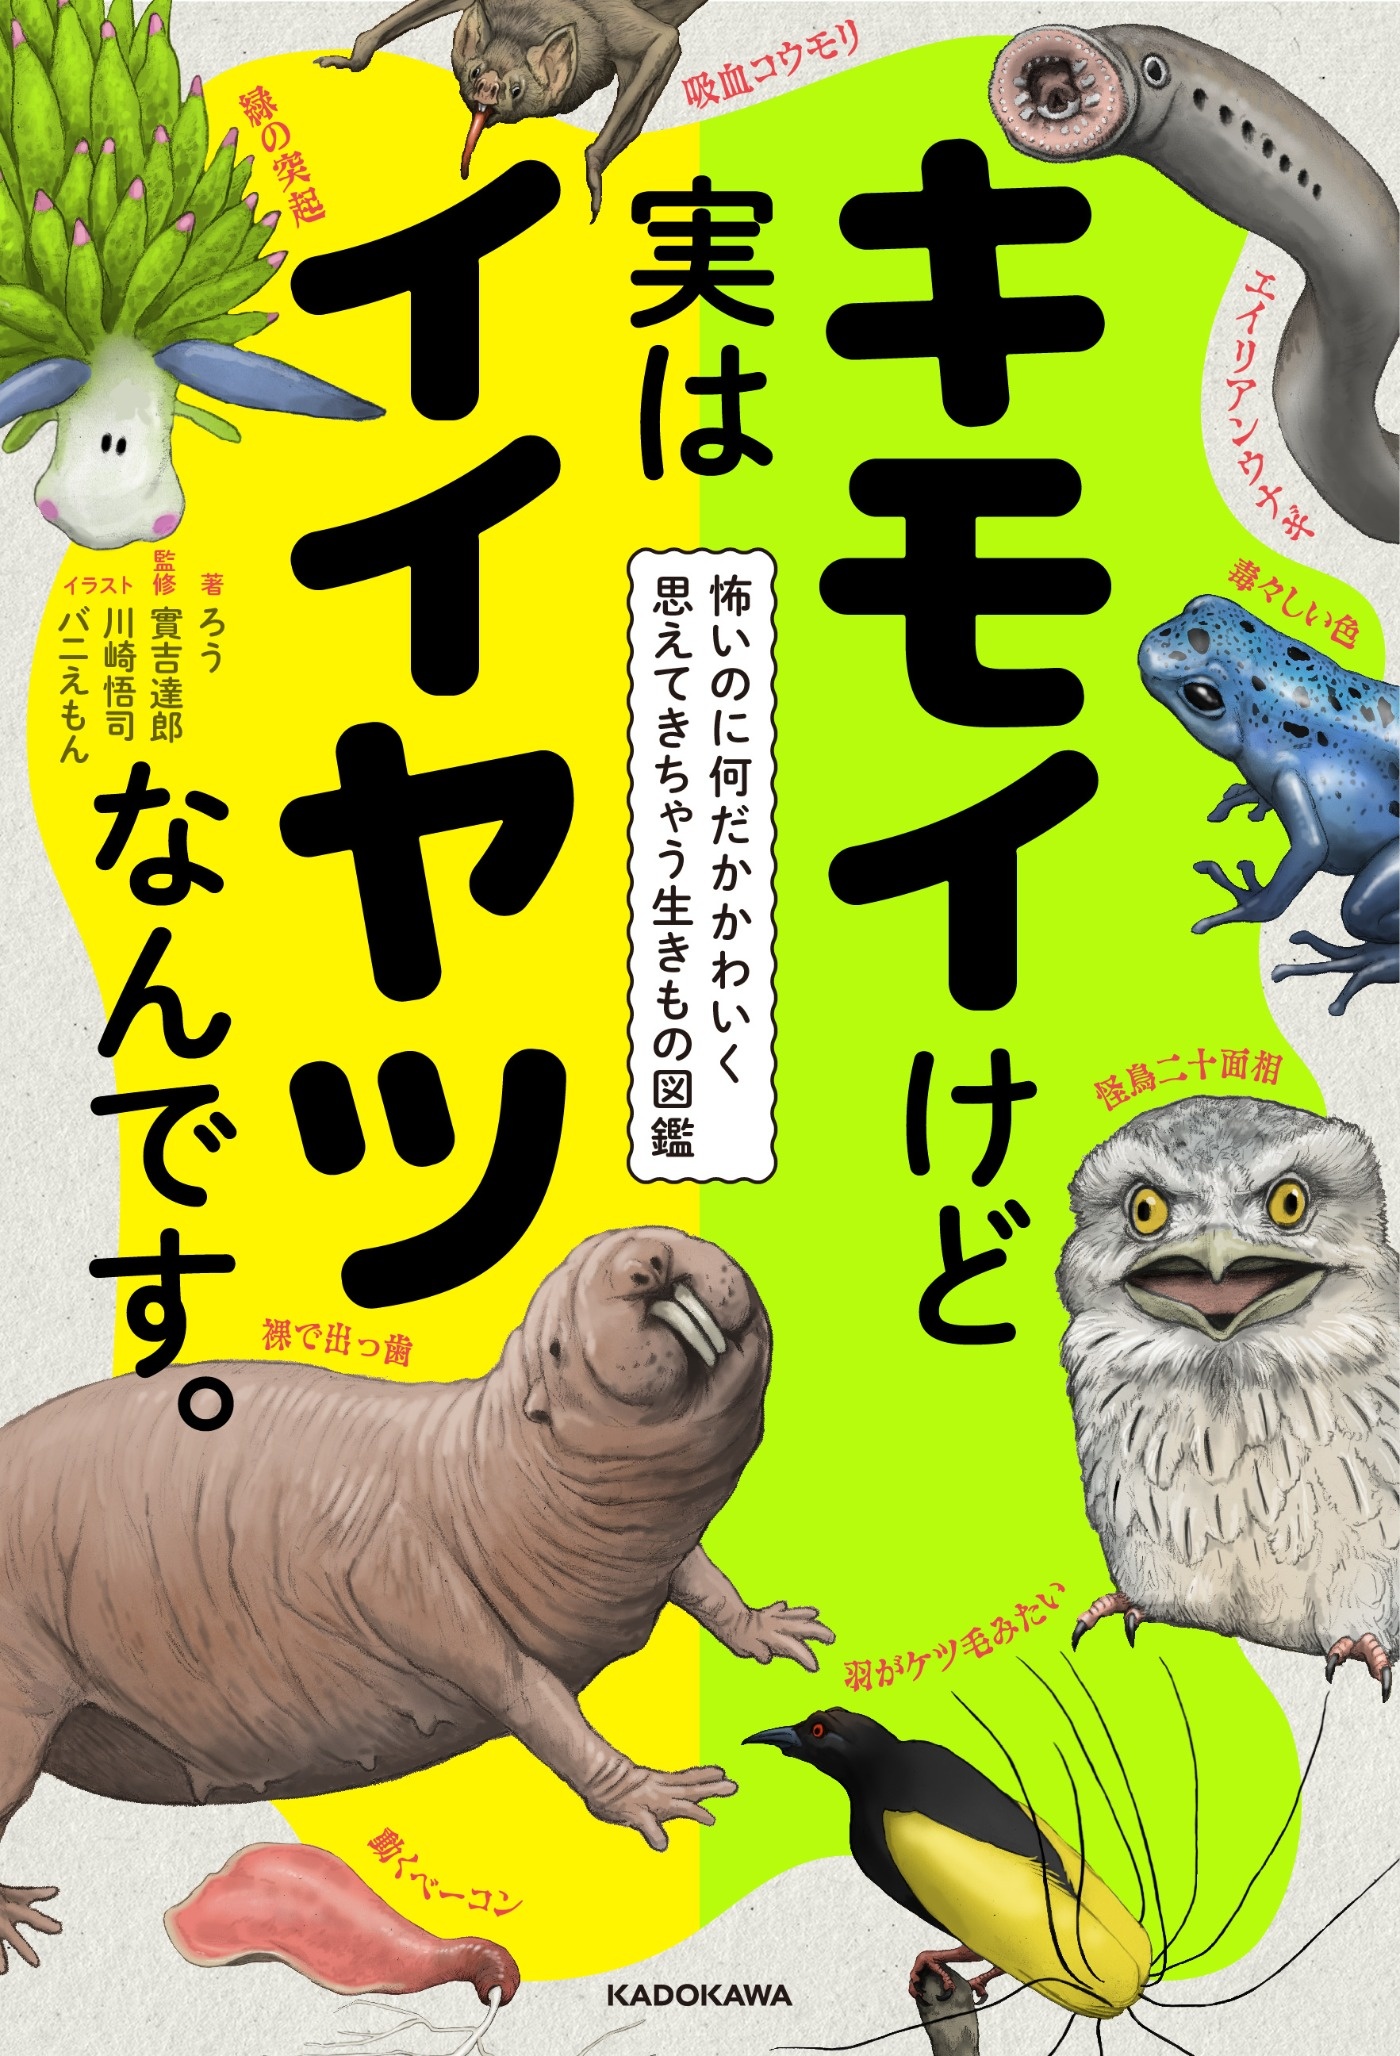 生き物エンタメ図鑑 キモいけど実はイイヤツなんです 著者 ろうさんインタビュー ヨメルバ Kadokawa児童書ポータルサイト